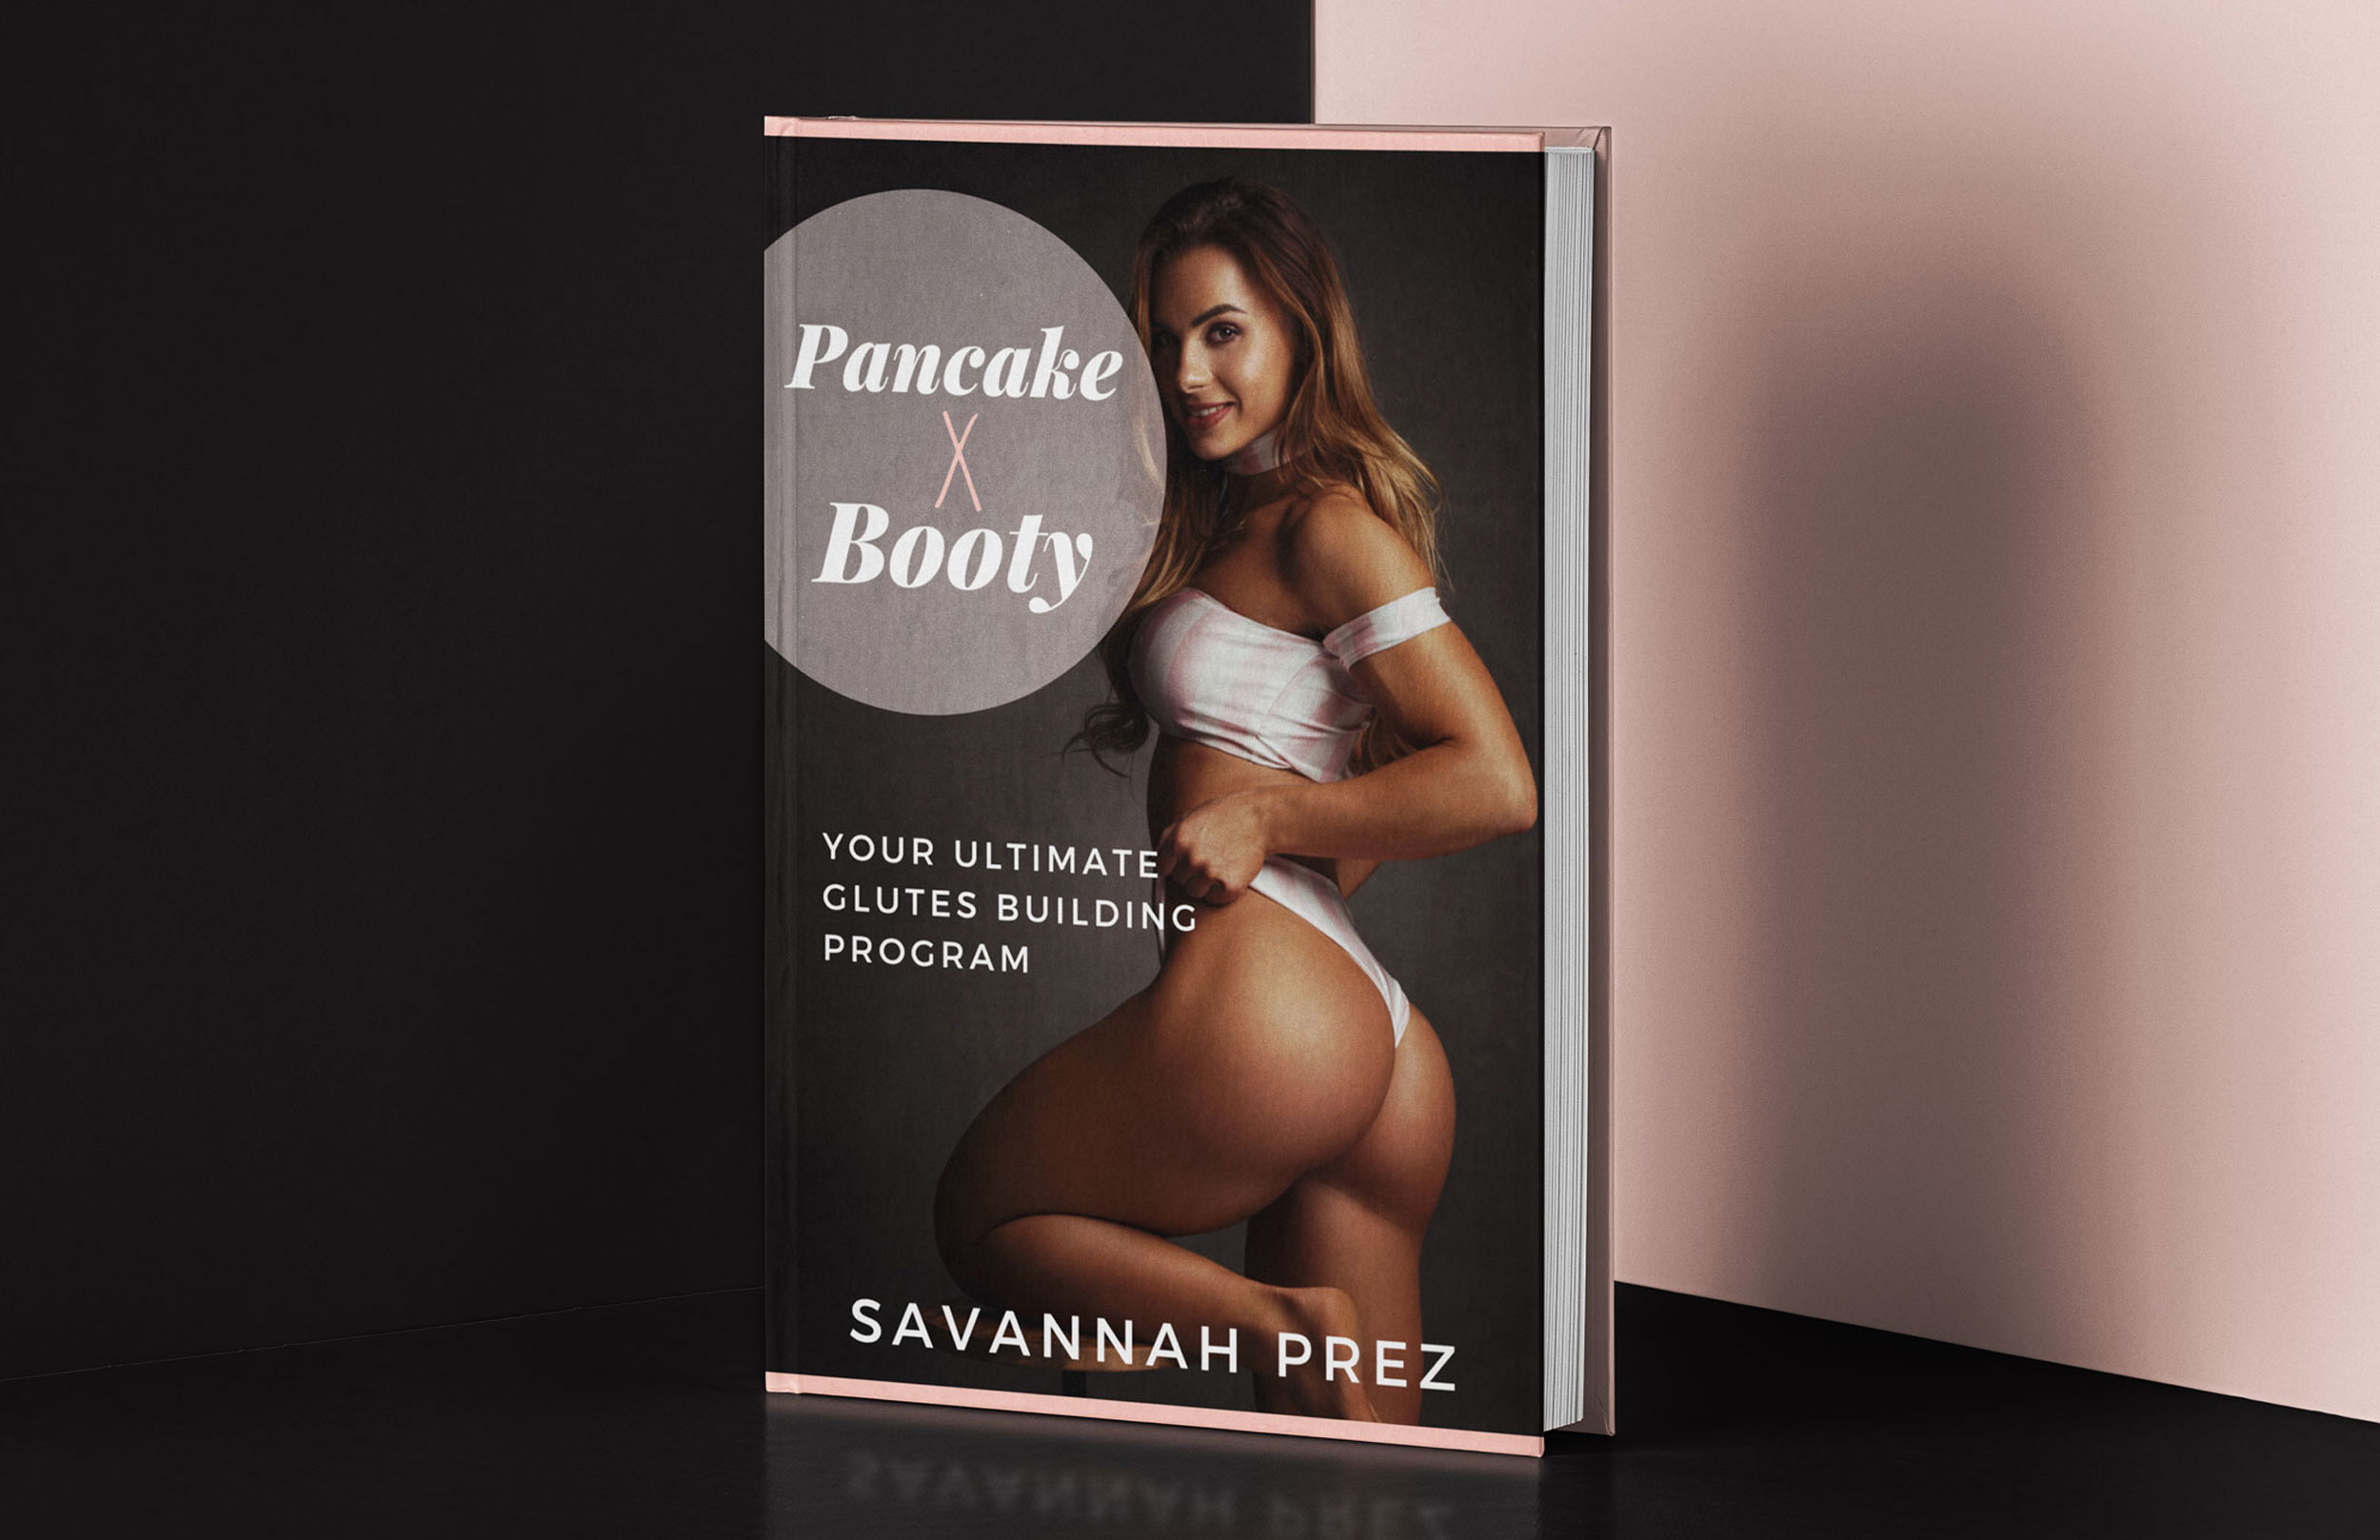 Pancake x Booty by Savannah Prez